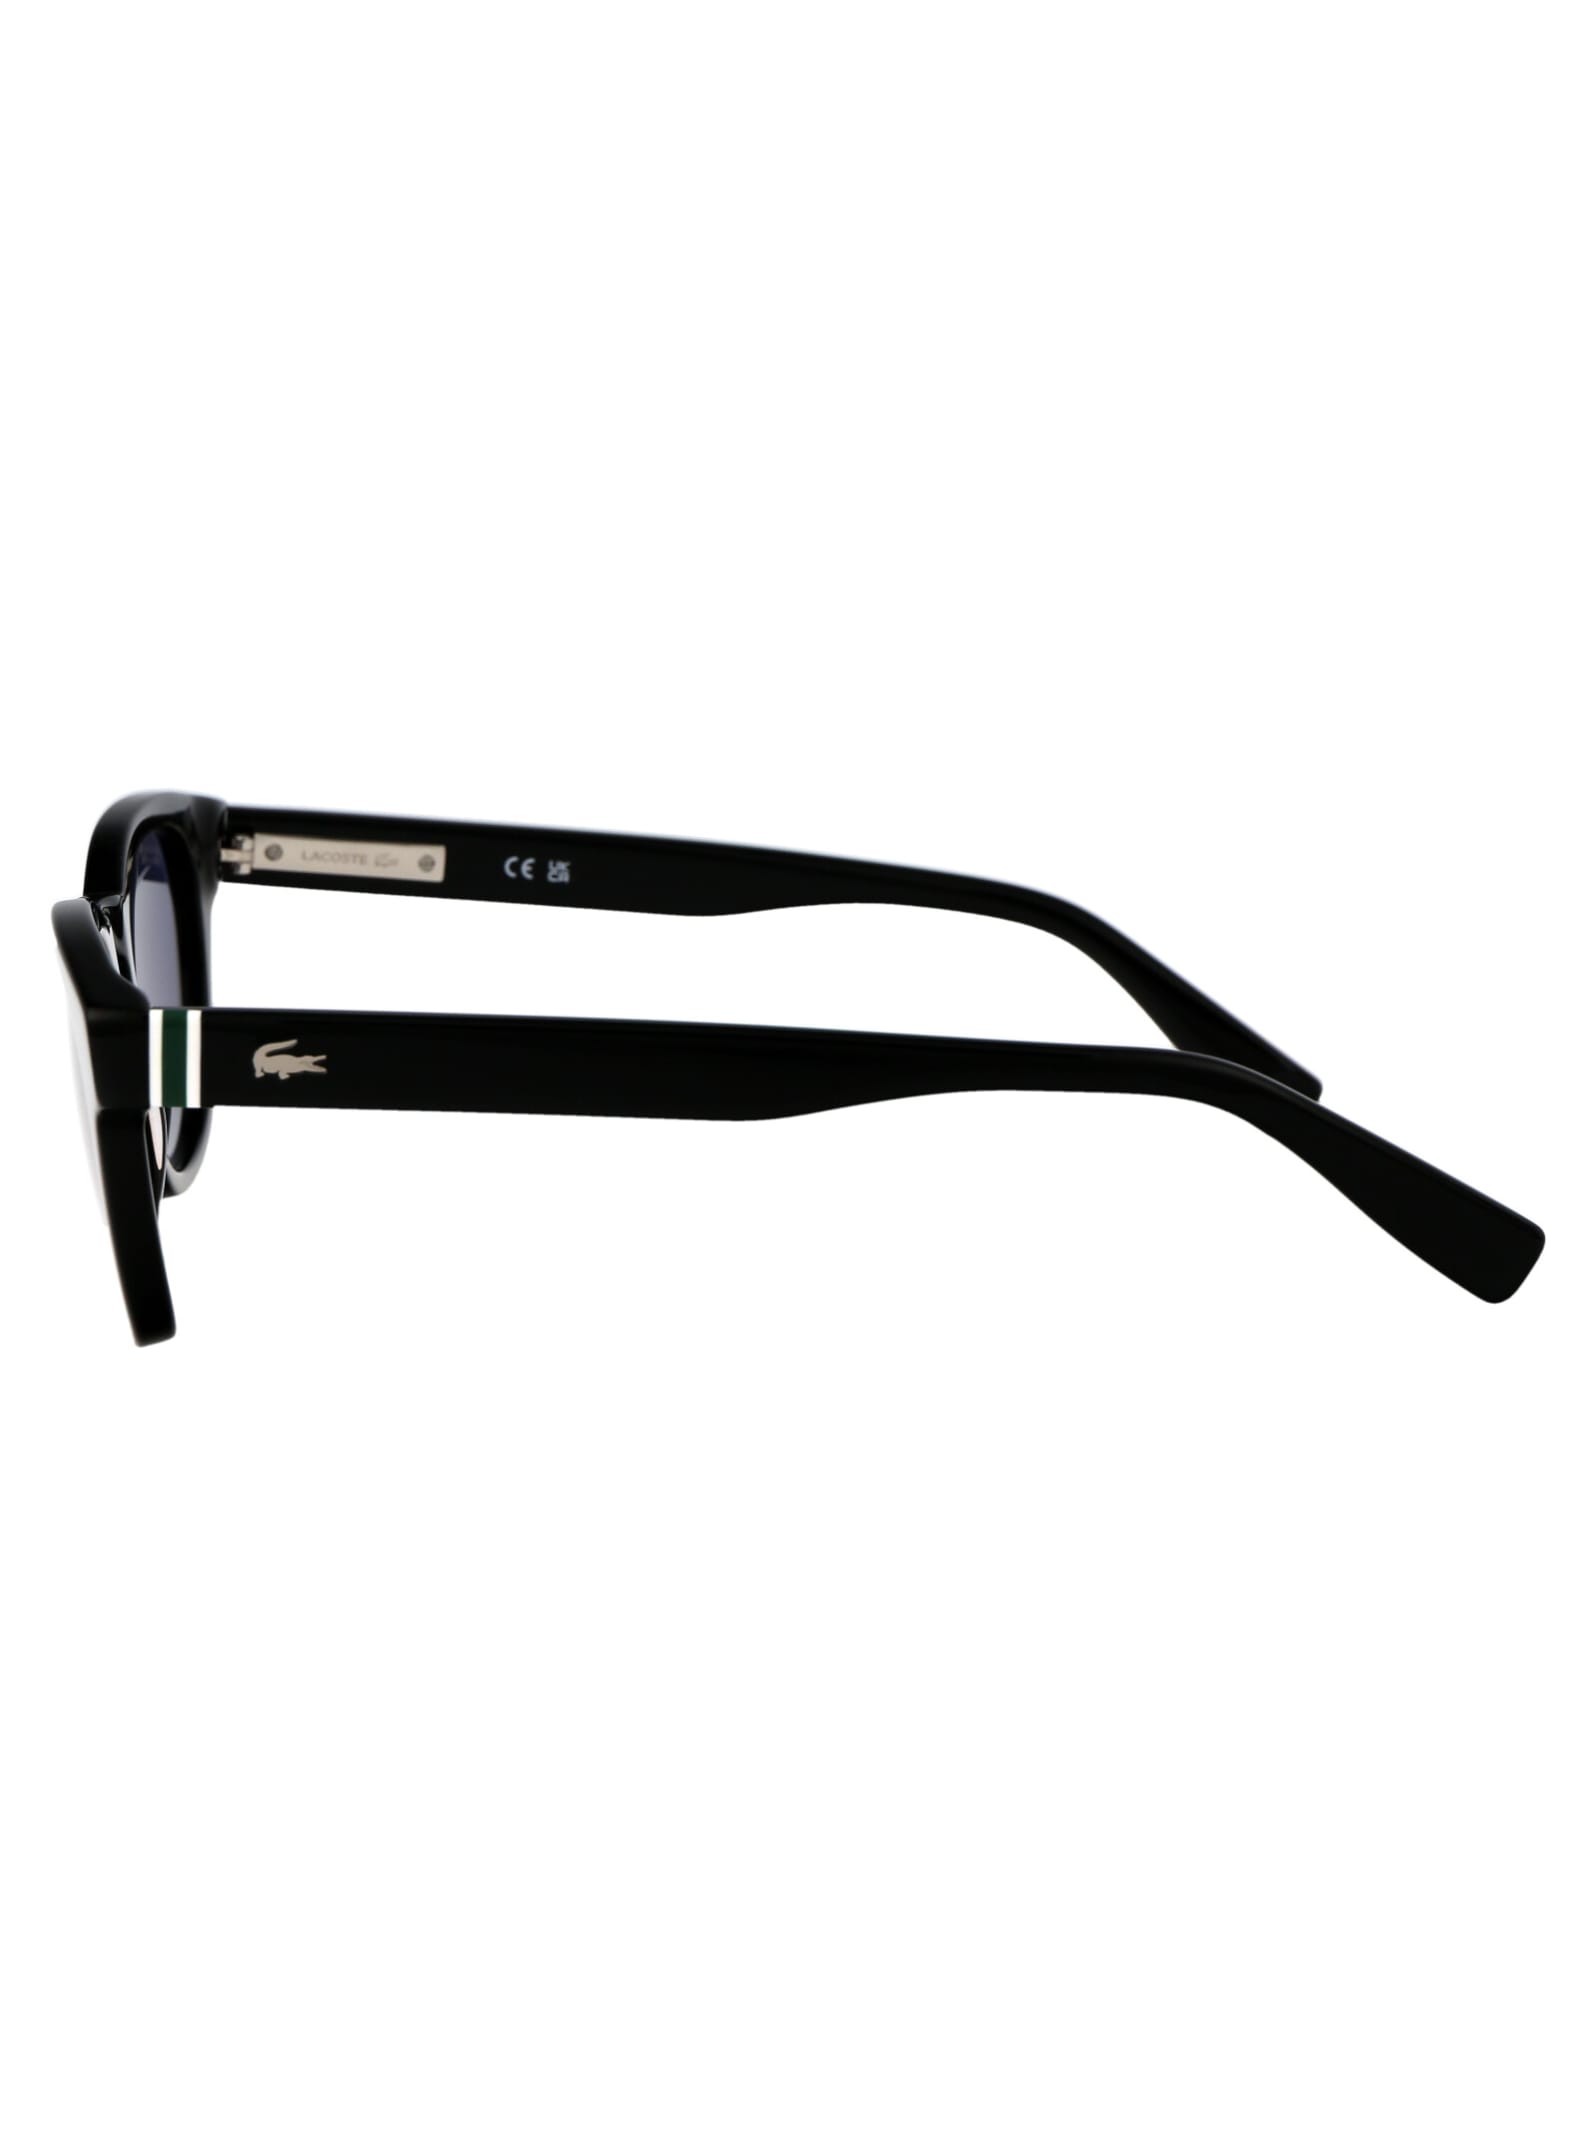 Shop Lacoste L6015s Sunglasses In 001 Black